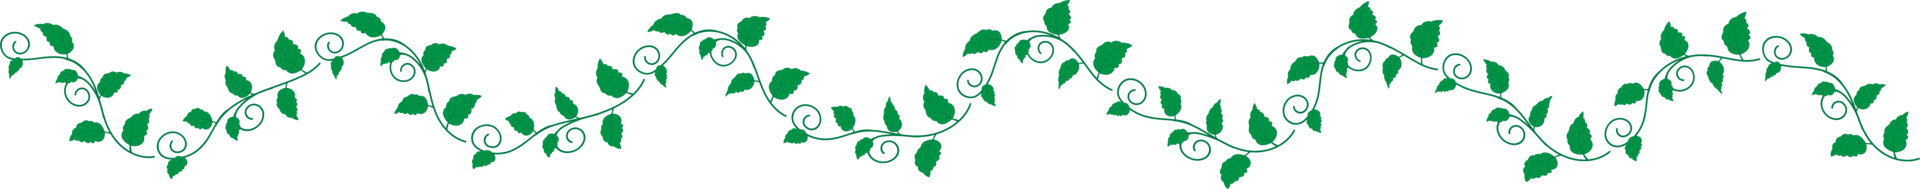 Ornamentausschnitt mit grünen Blättern png